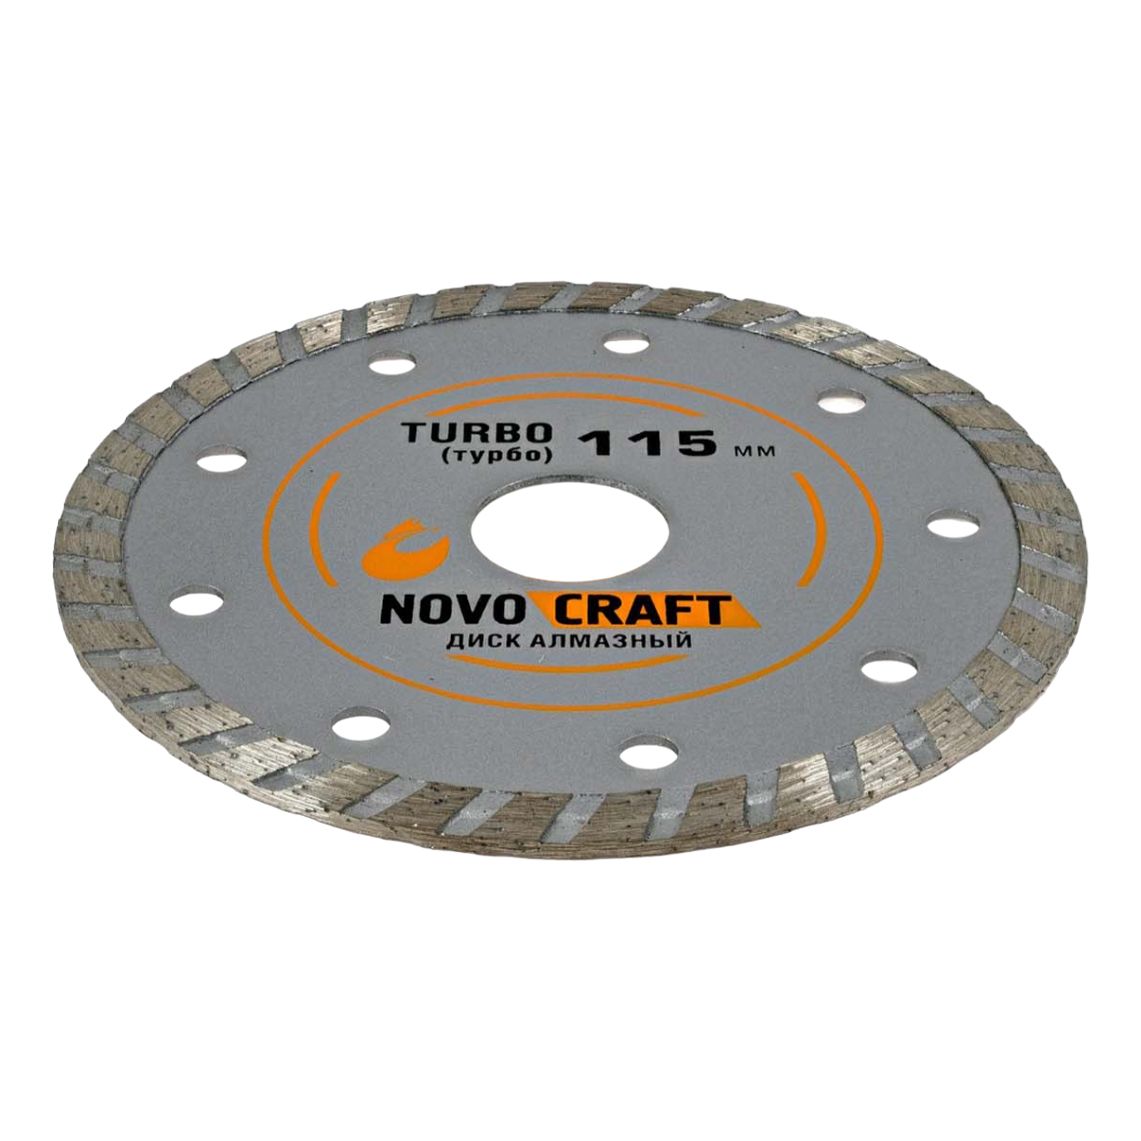 фото Алмазный диск для бетона novocraft turbo 115 х 1,8 мм